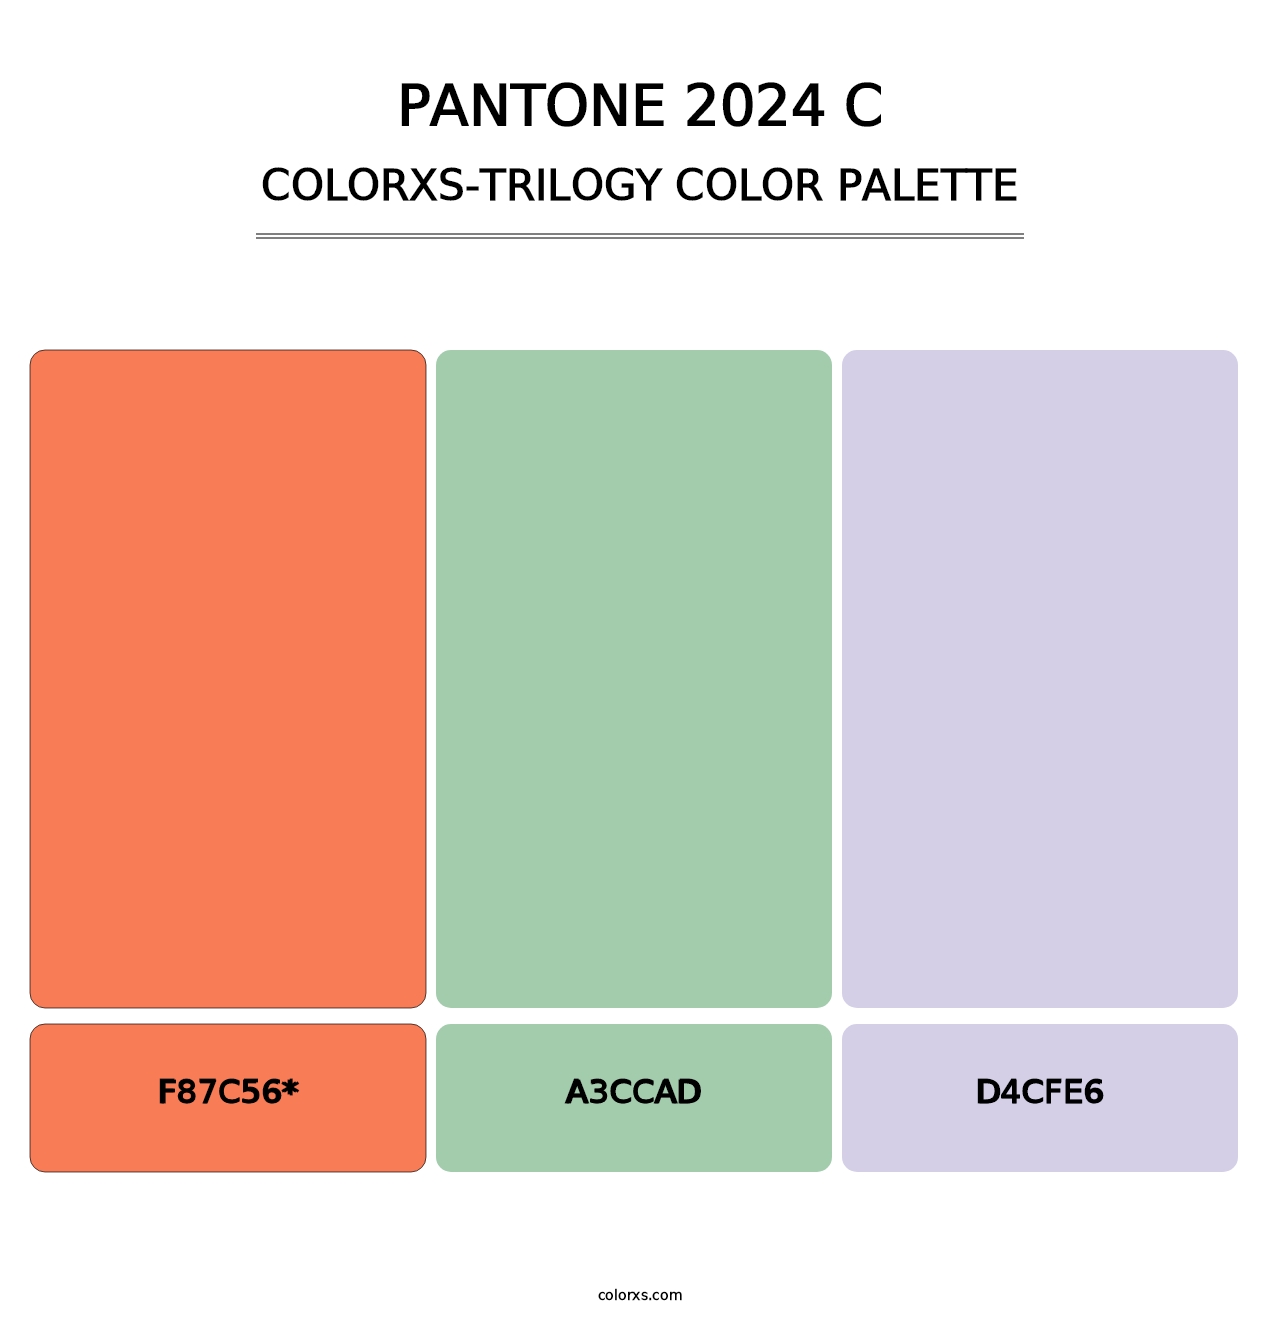 PANTONE 2024 C - Colorxs Trilogy Palette